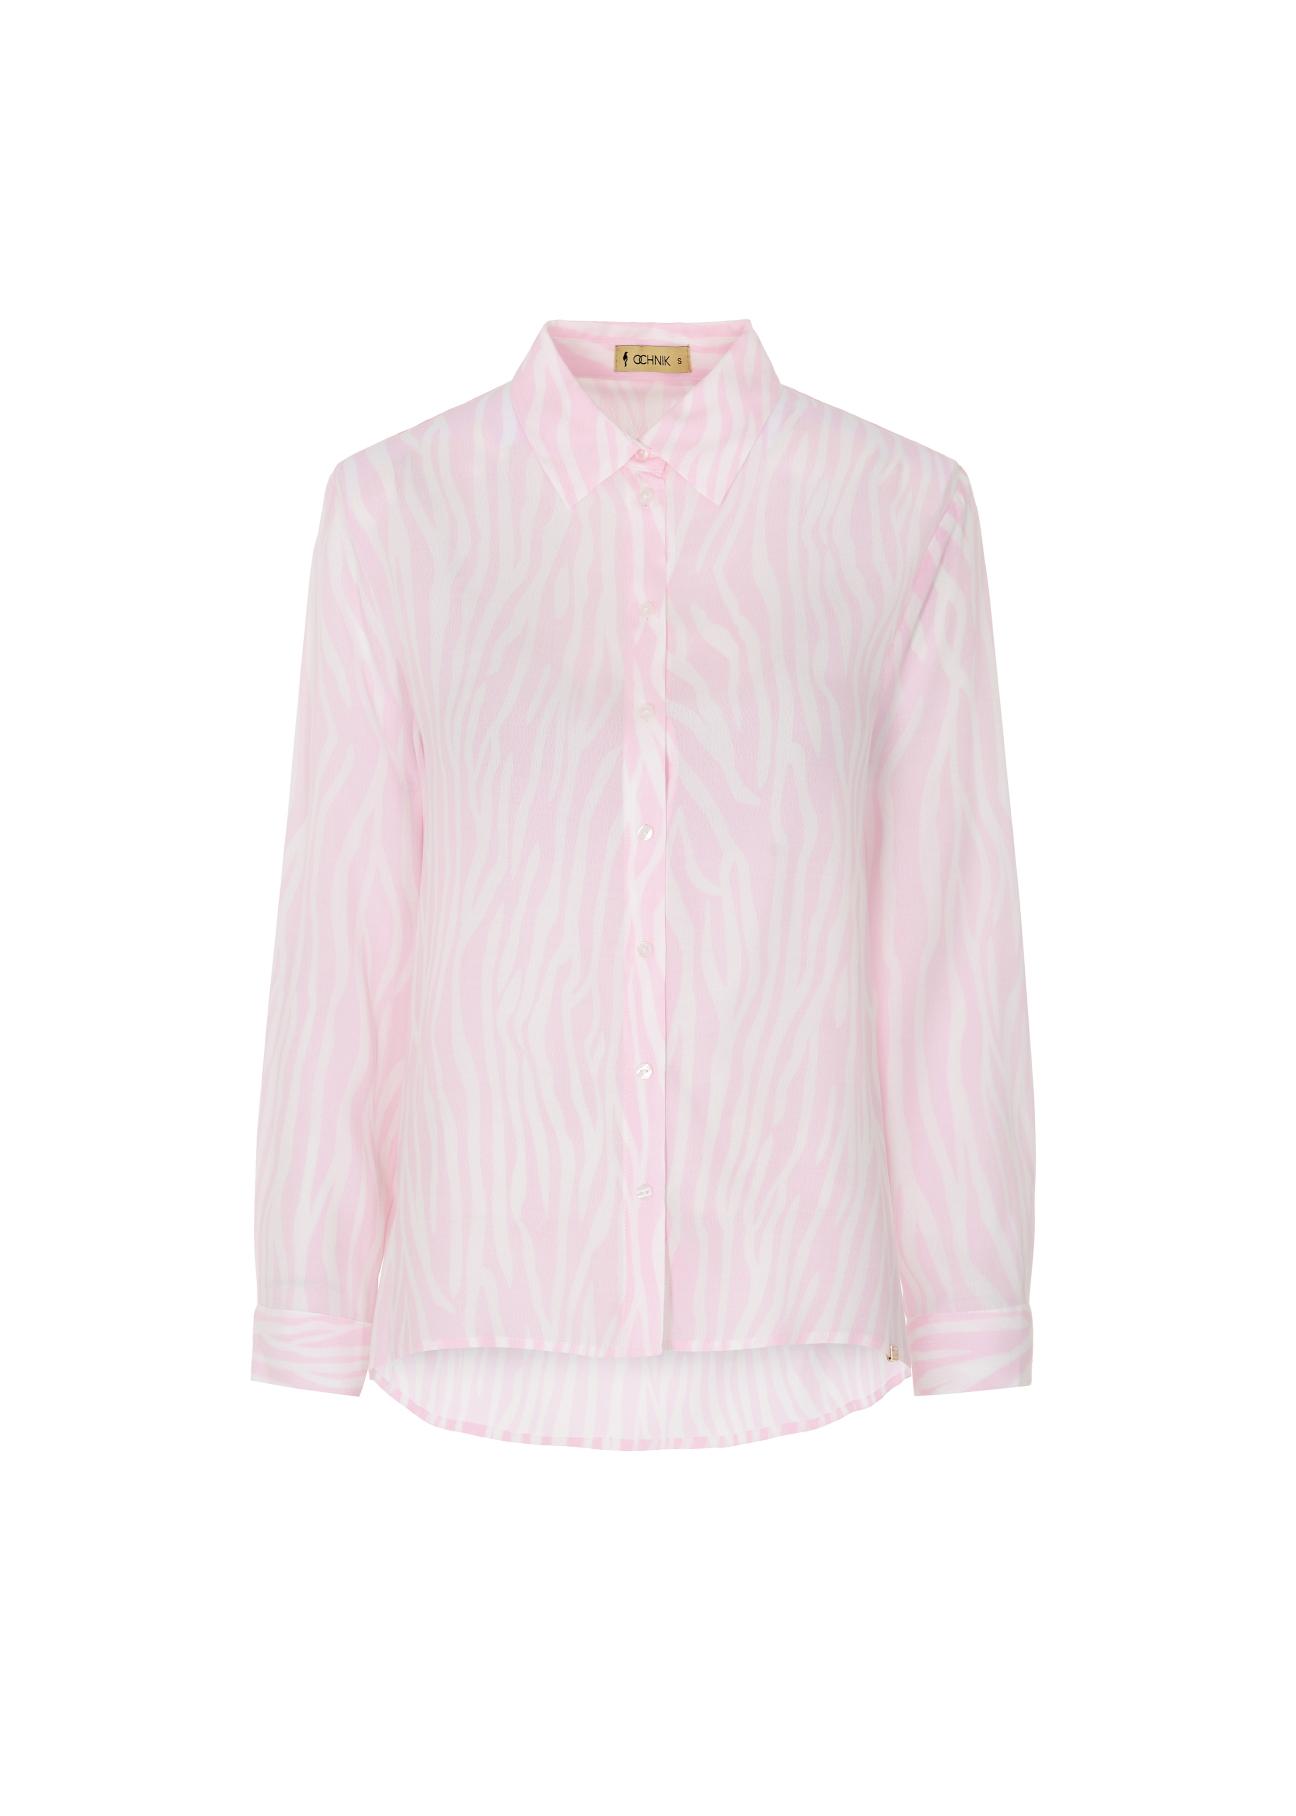 Różowa koszula damska KOSDT-0095-34(W22)